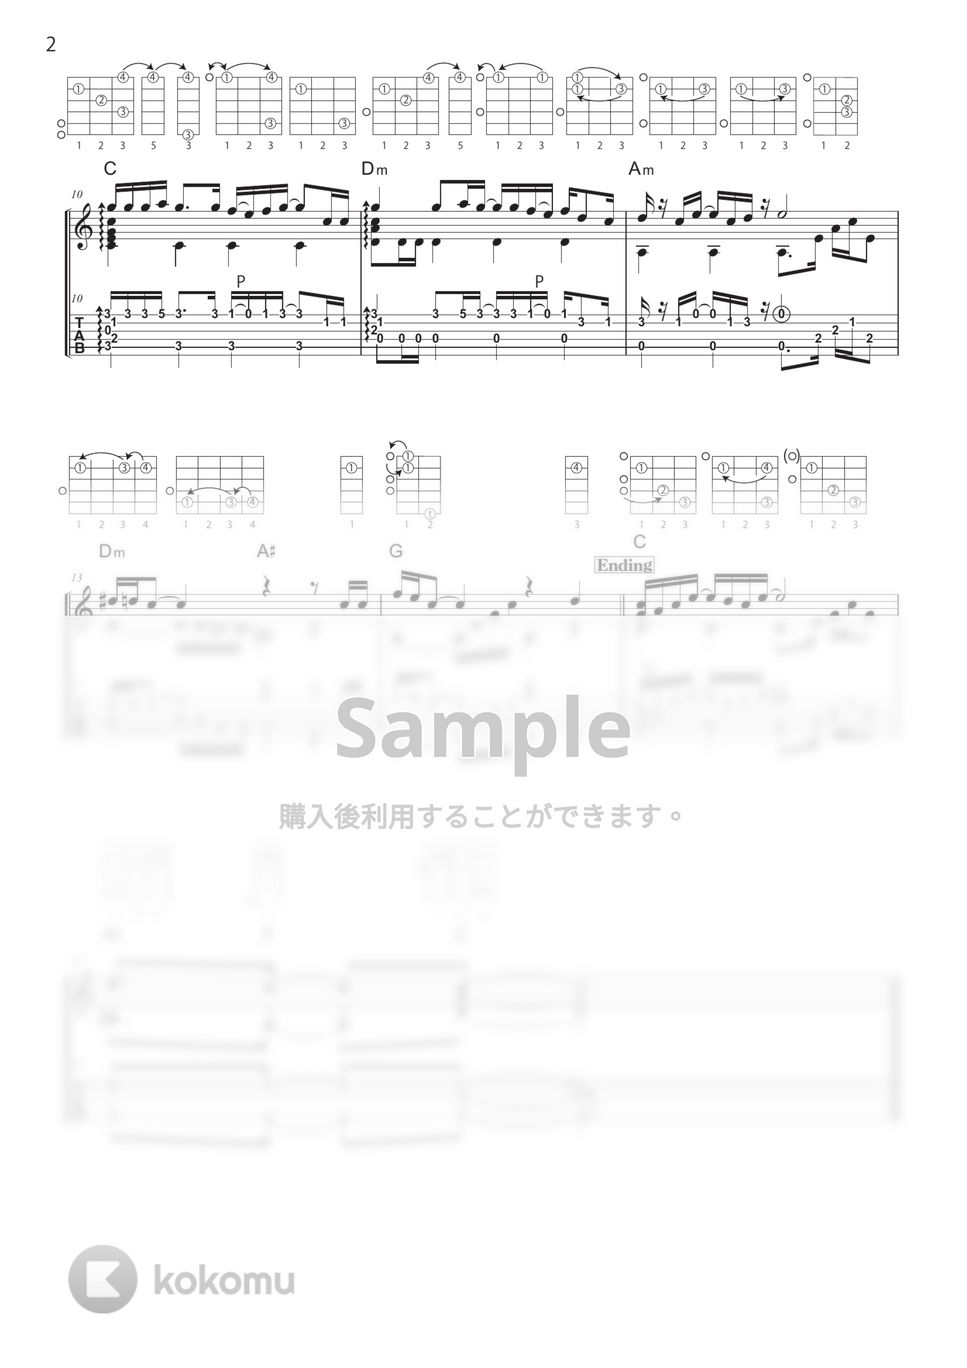 橋本仁 - 青空になる (ソロギター・ダイアグラム、解説付き) by 川口コウスケ